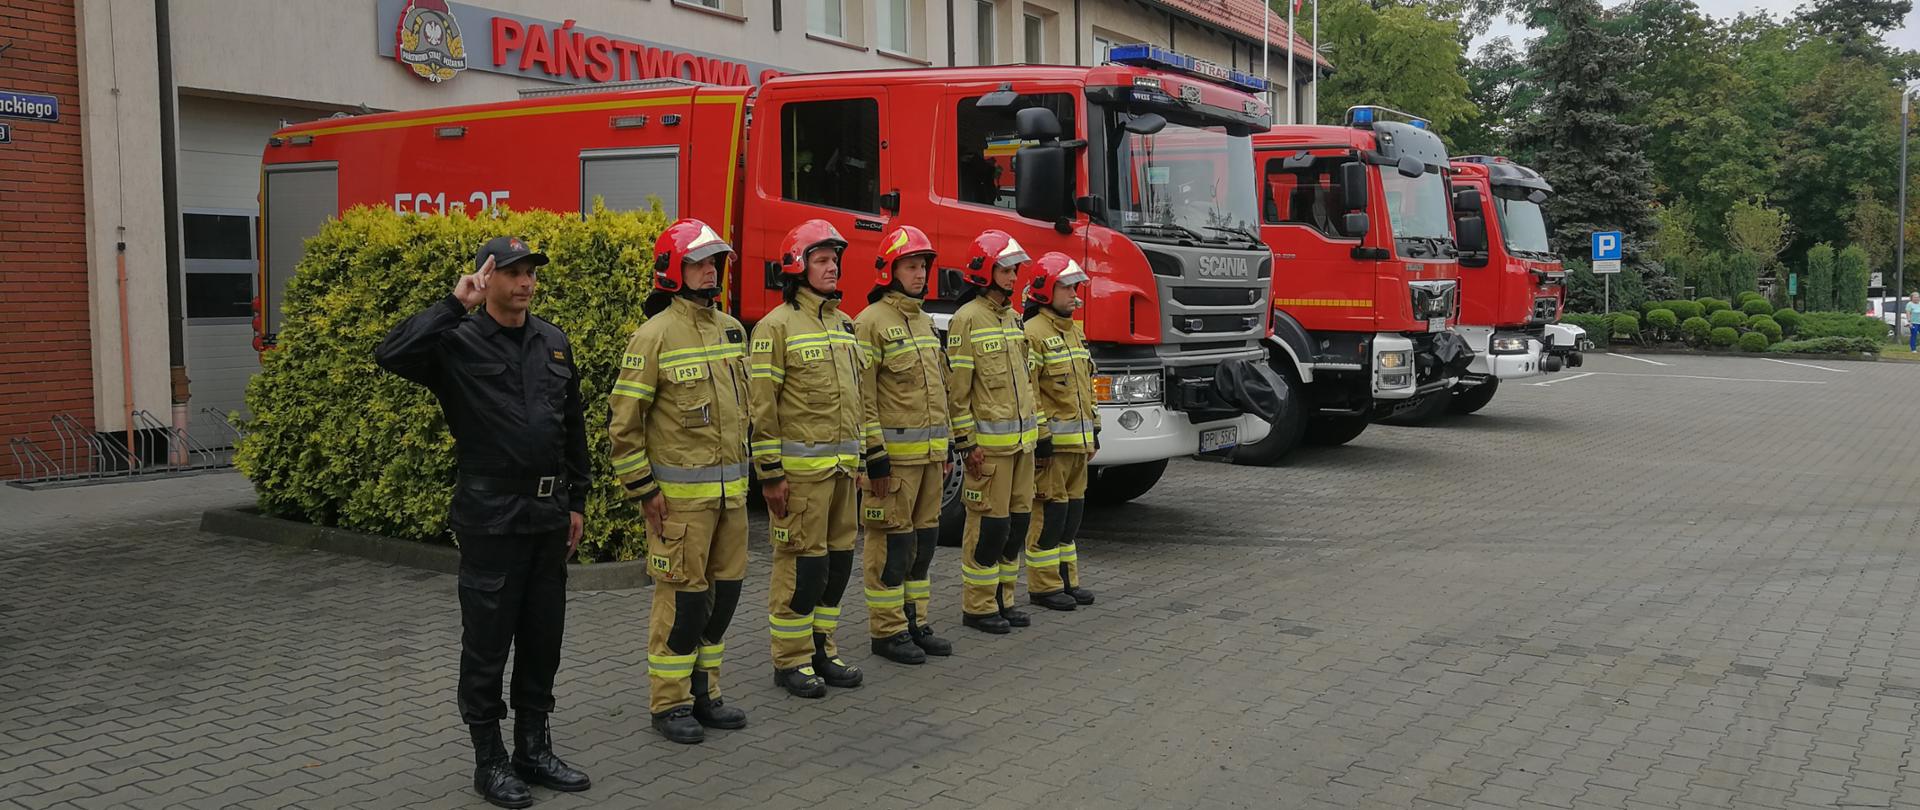 Na zdjęciu widać strażaków oddających honor bohaterom Powstania Warszawskiego przed Komendą Powiatową PSP w Pleszewie oraz stojącego obok samochody